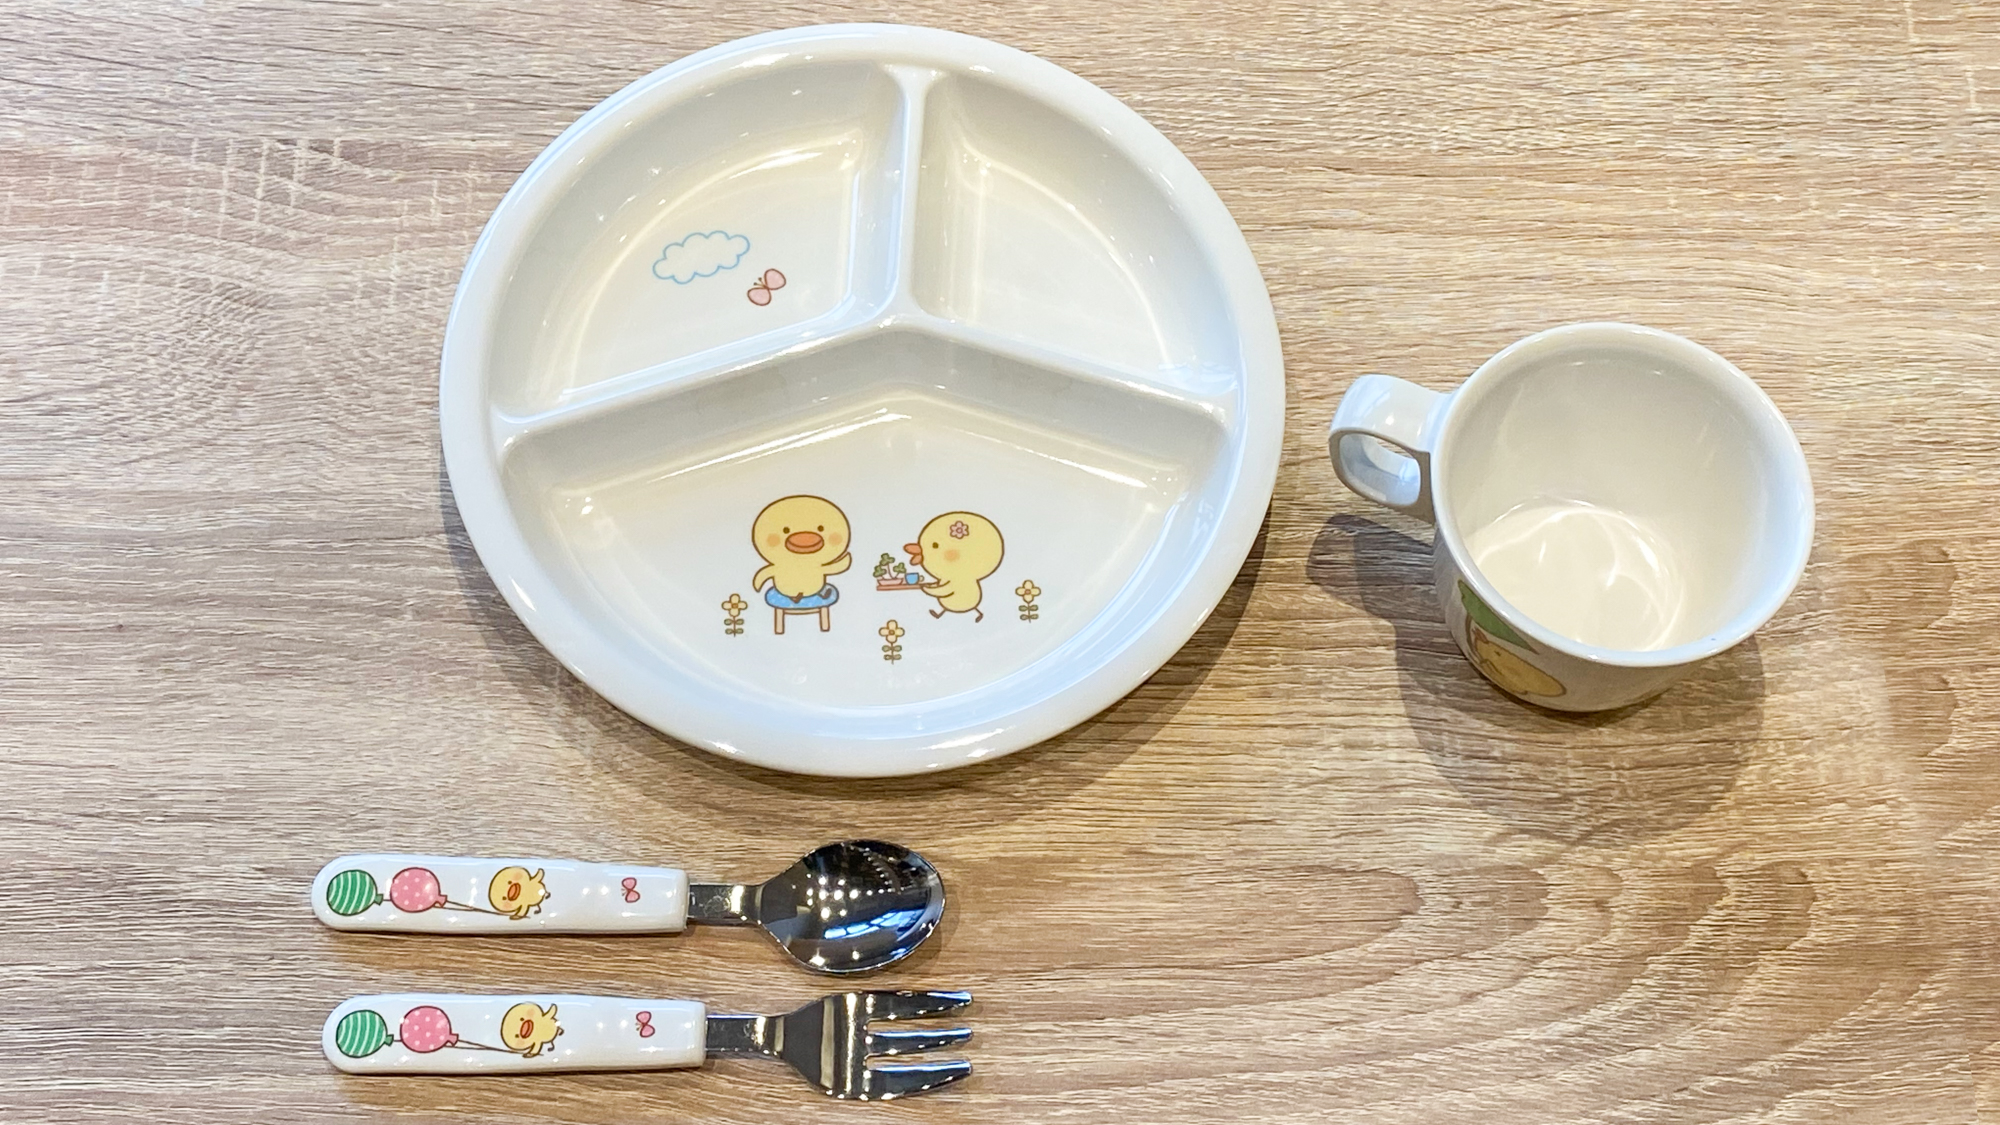 【無料朝食サービス】お子様用食器イメージ。ご利用の際はお気軽にスタッフまでお声がけください。